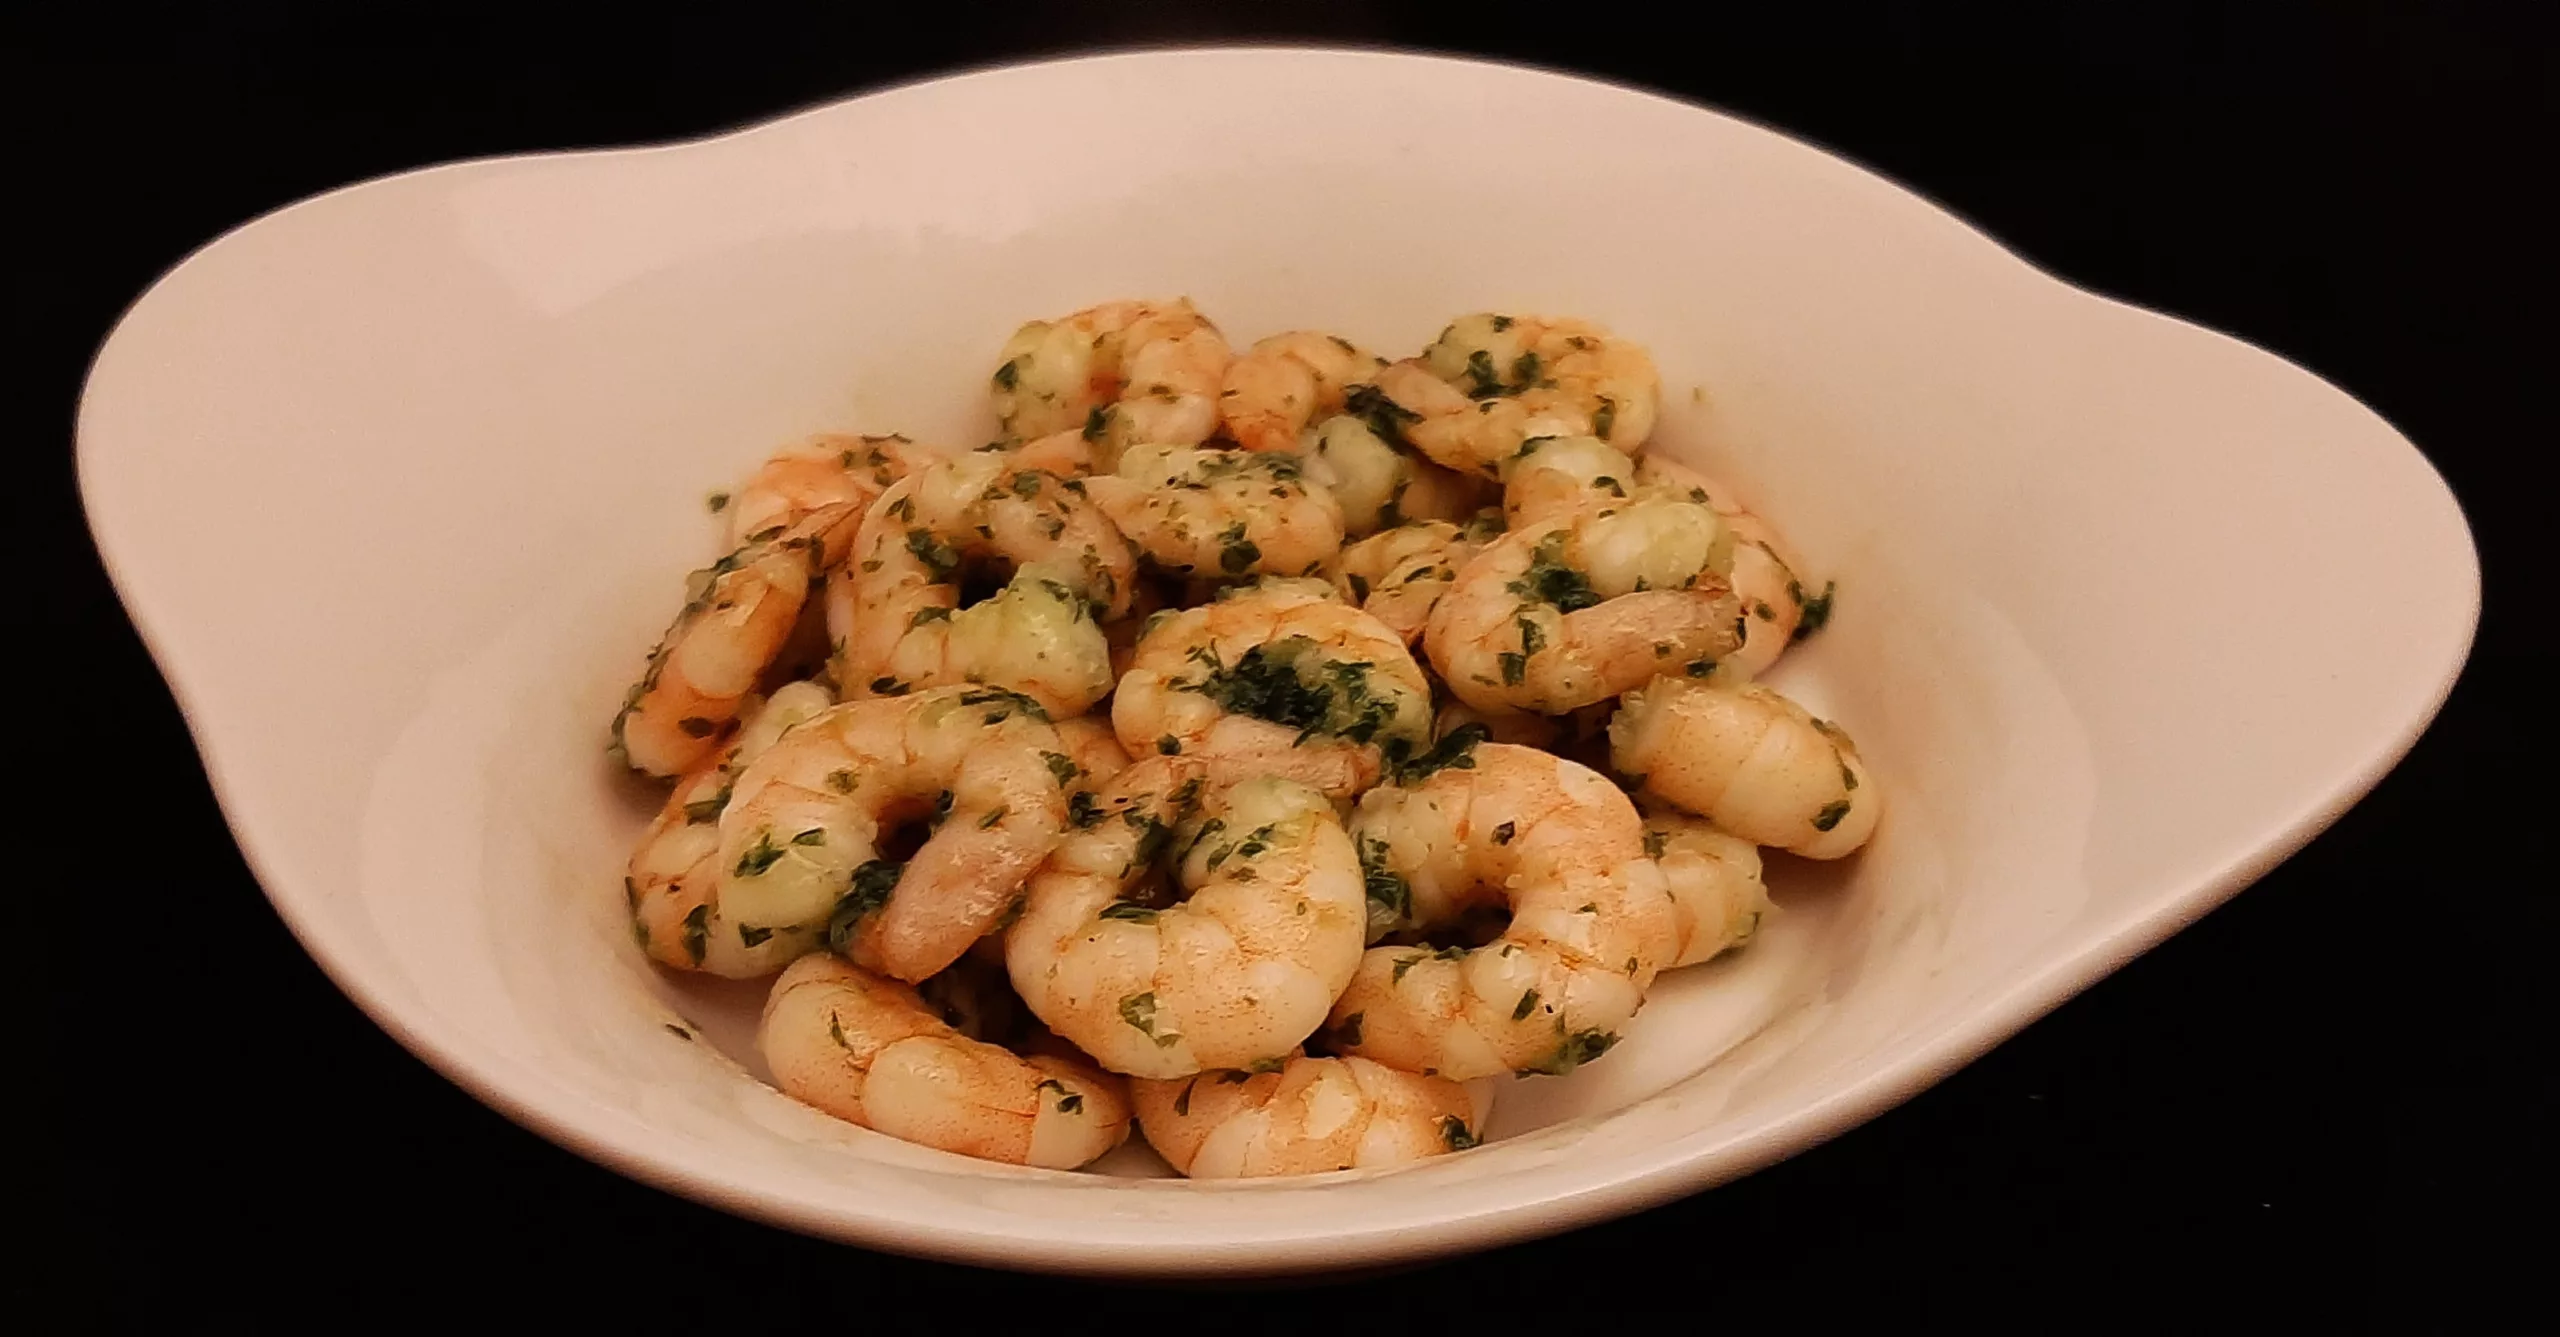 Crevettes sautées au beurre d'escargot. Une recette avec de l'ail et du persil pour une entrée chaude.